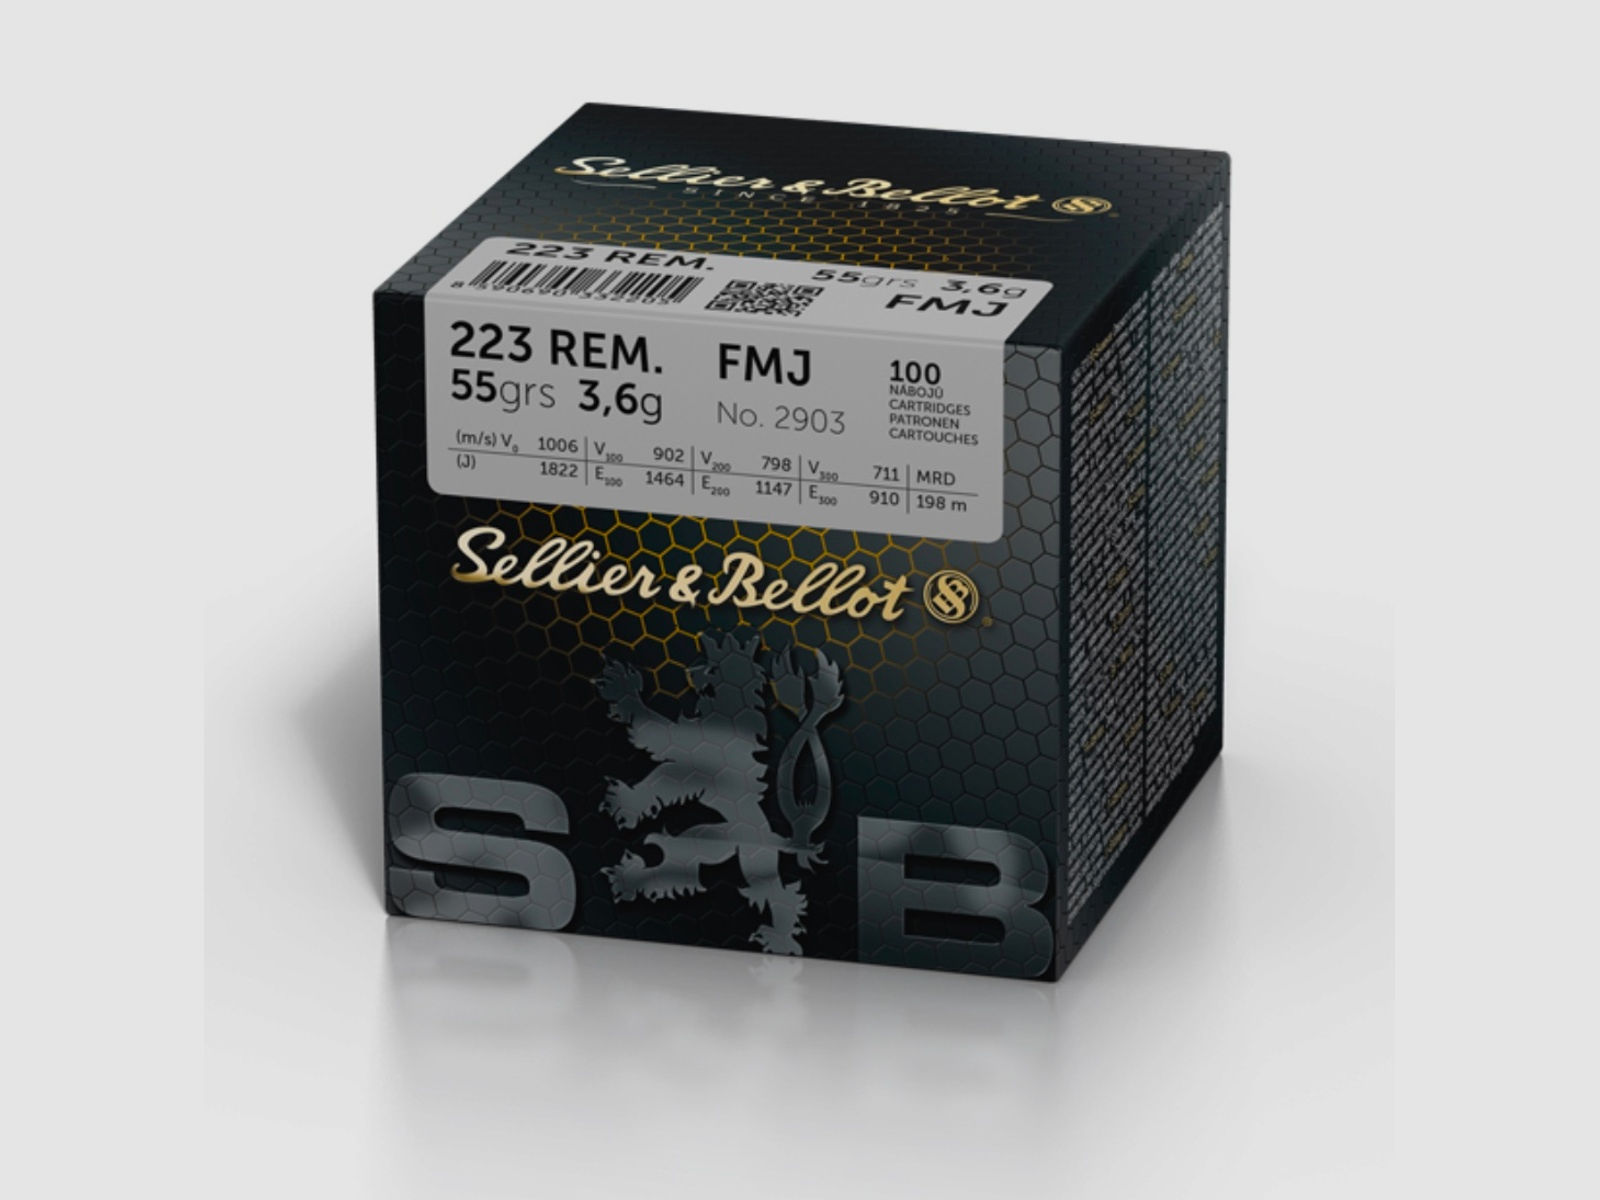 Sellier & Bellot 186962 .223 Rem. Vollmantel BT 3,6g 55grs. 100 Stk